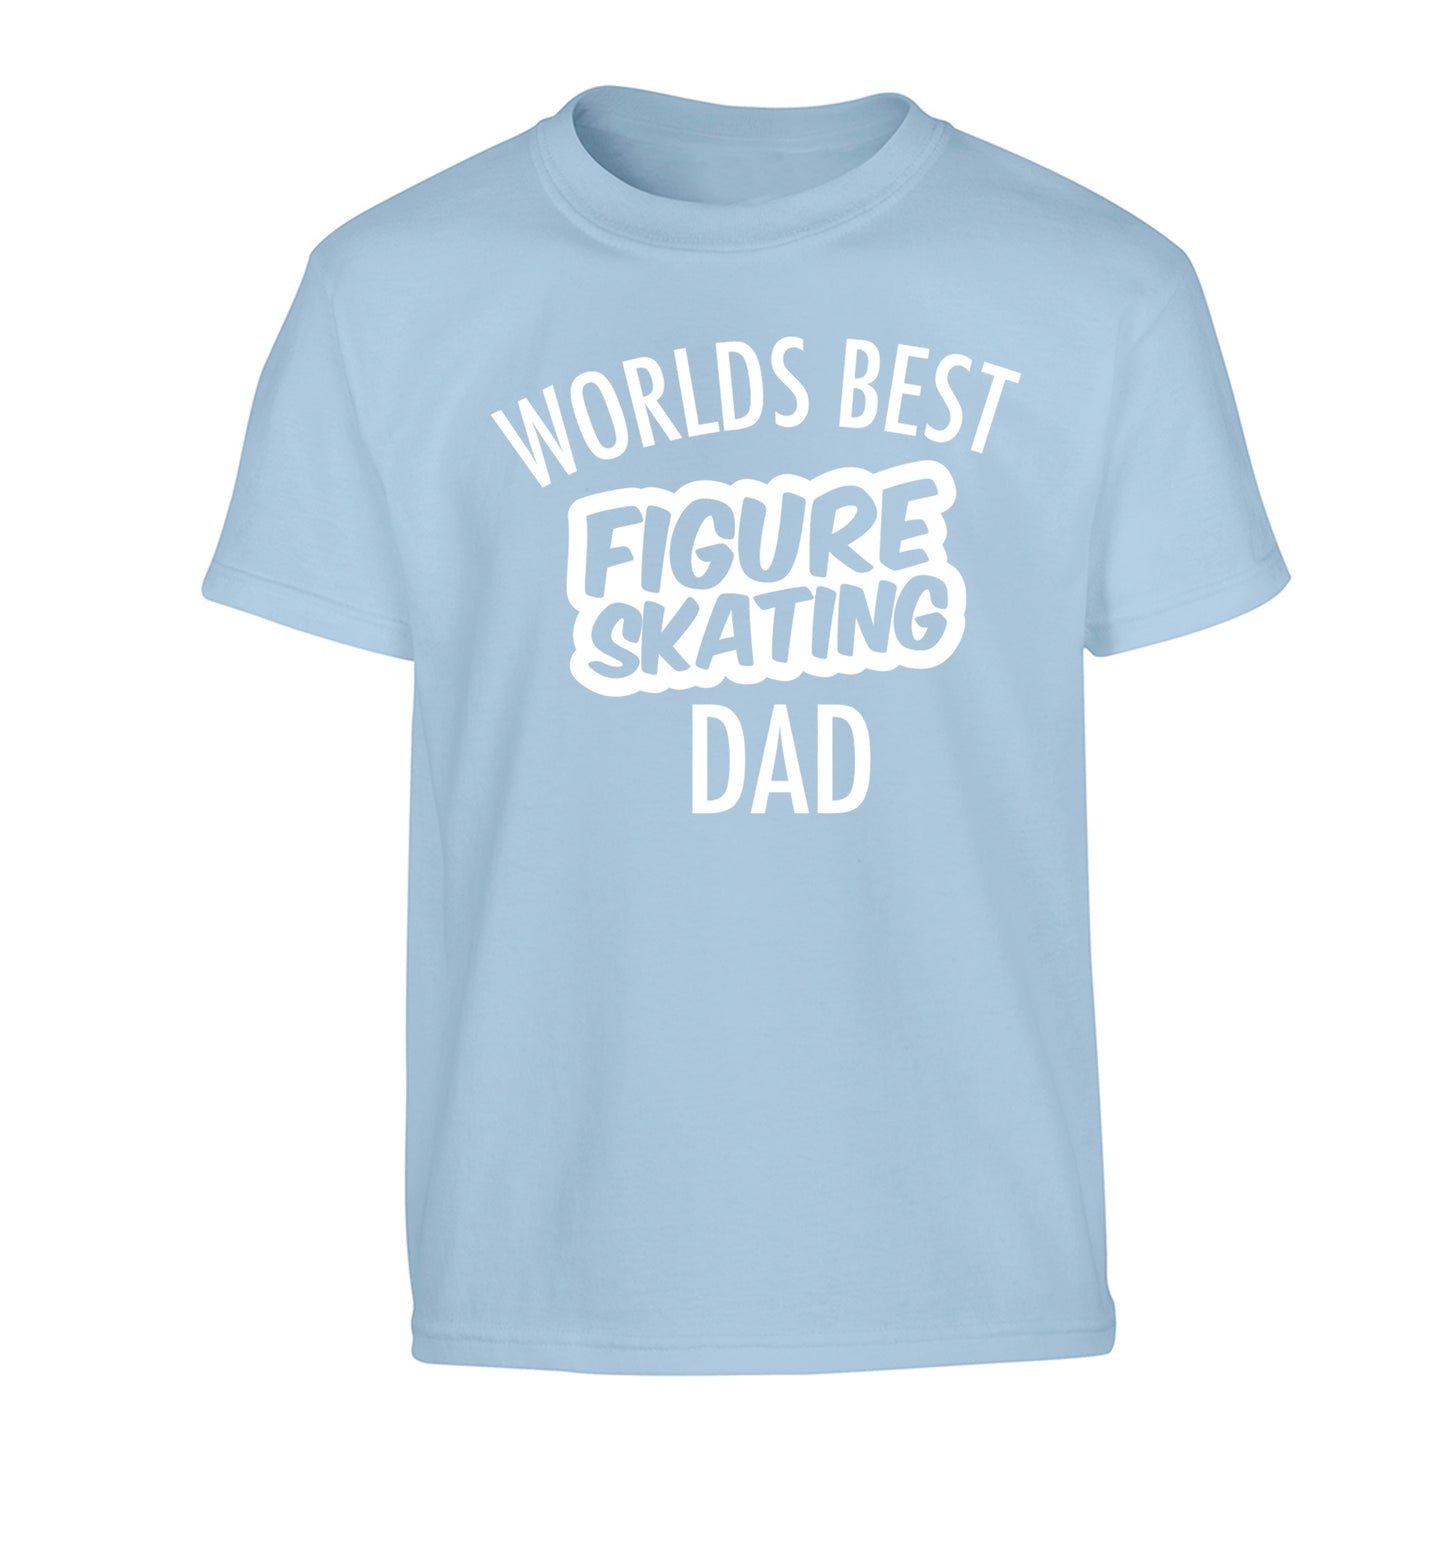 Worlds best figure skating dad Children's light blue Tshirt 12-14 Years